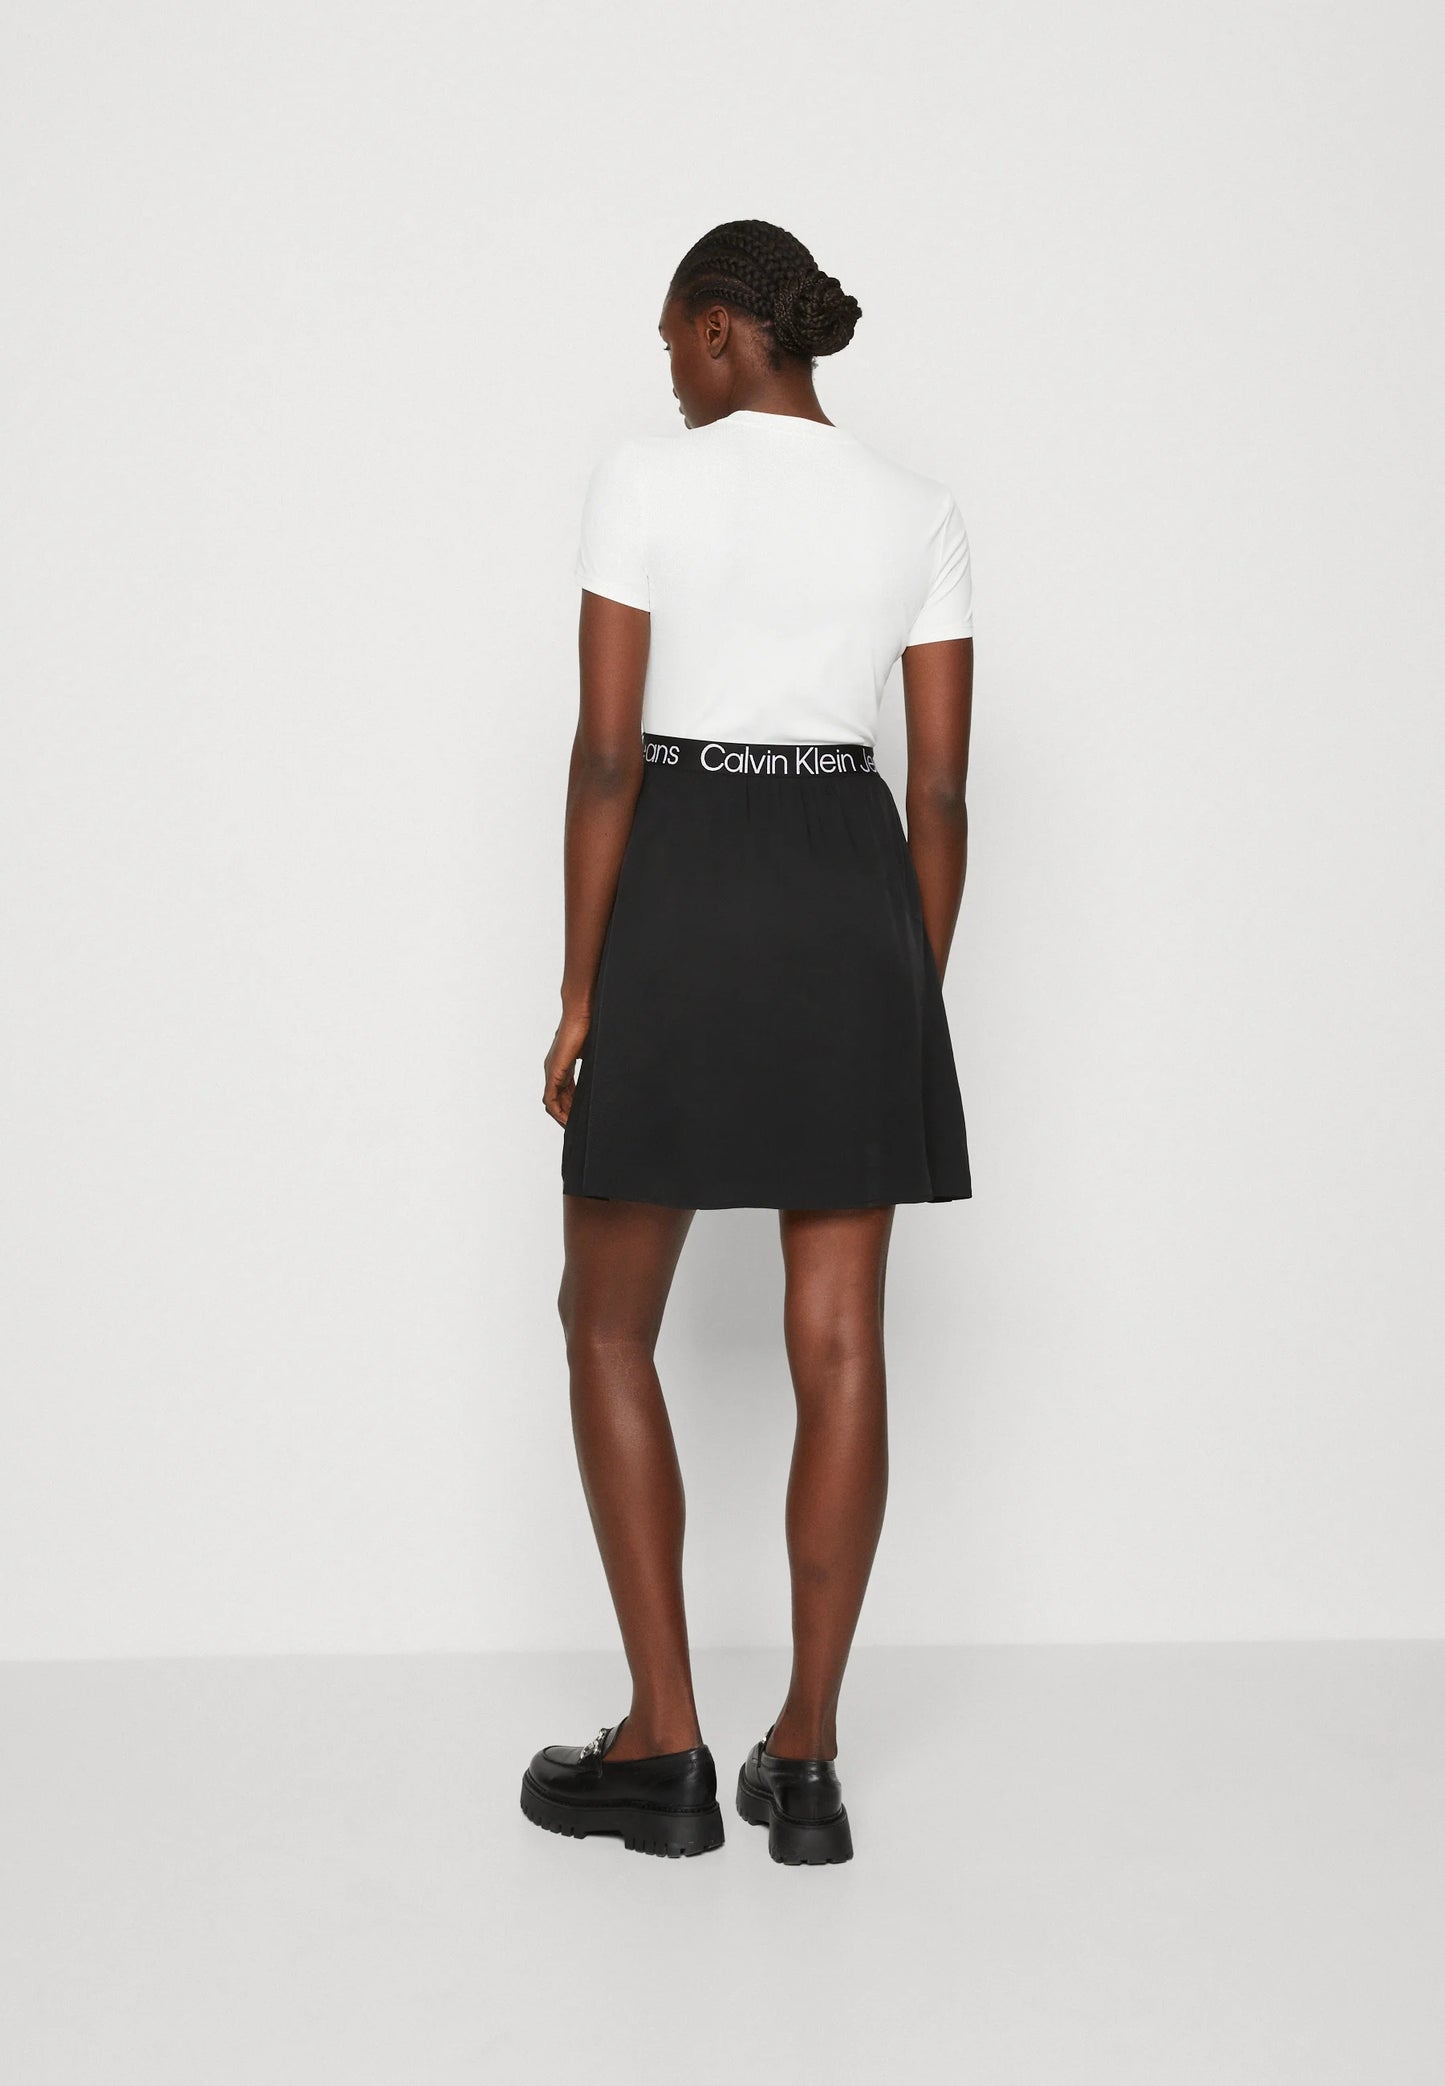 Calvin Klein Black and White Two-Tone Logo Tape Dress